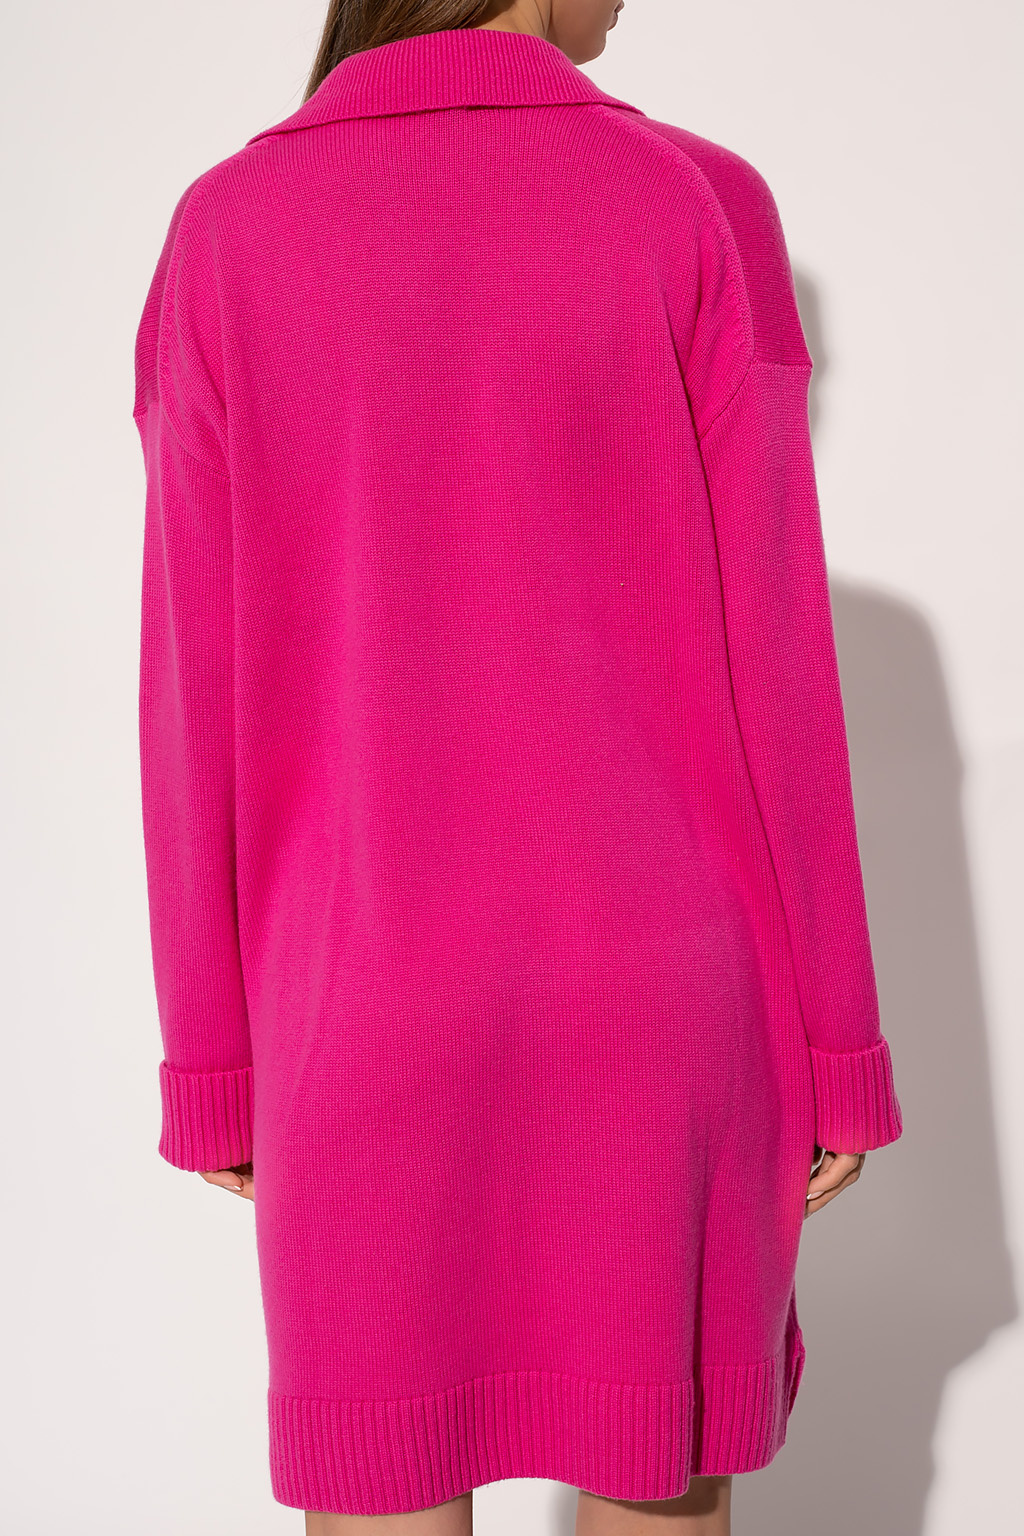 Diane Von Furstenberg Dress with pockets